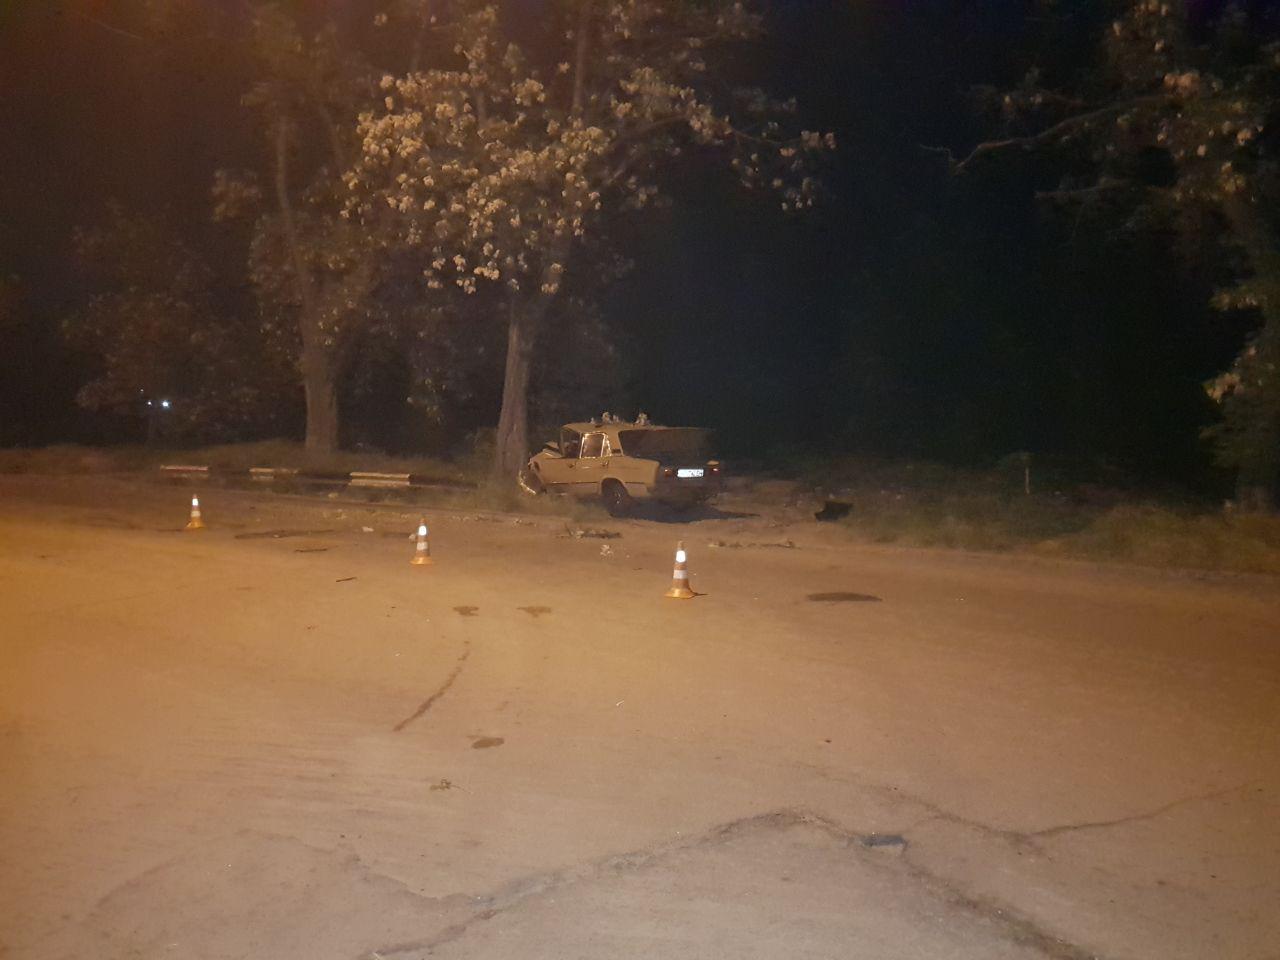 В Запорожье пьяный водитель влетел в дерево: есть пострадавшие - ФОТО